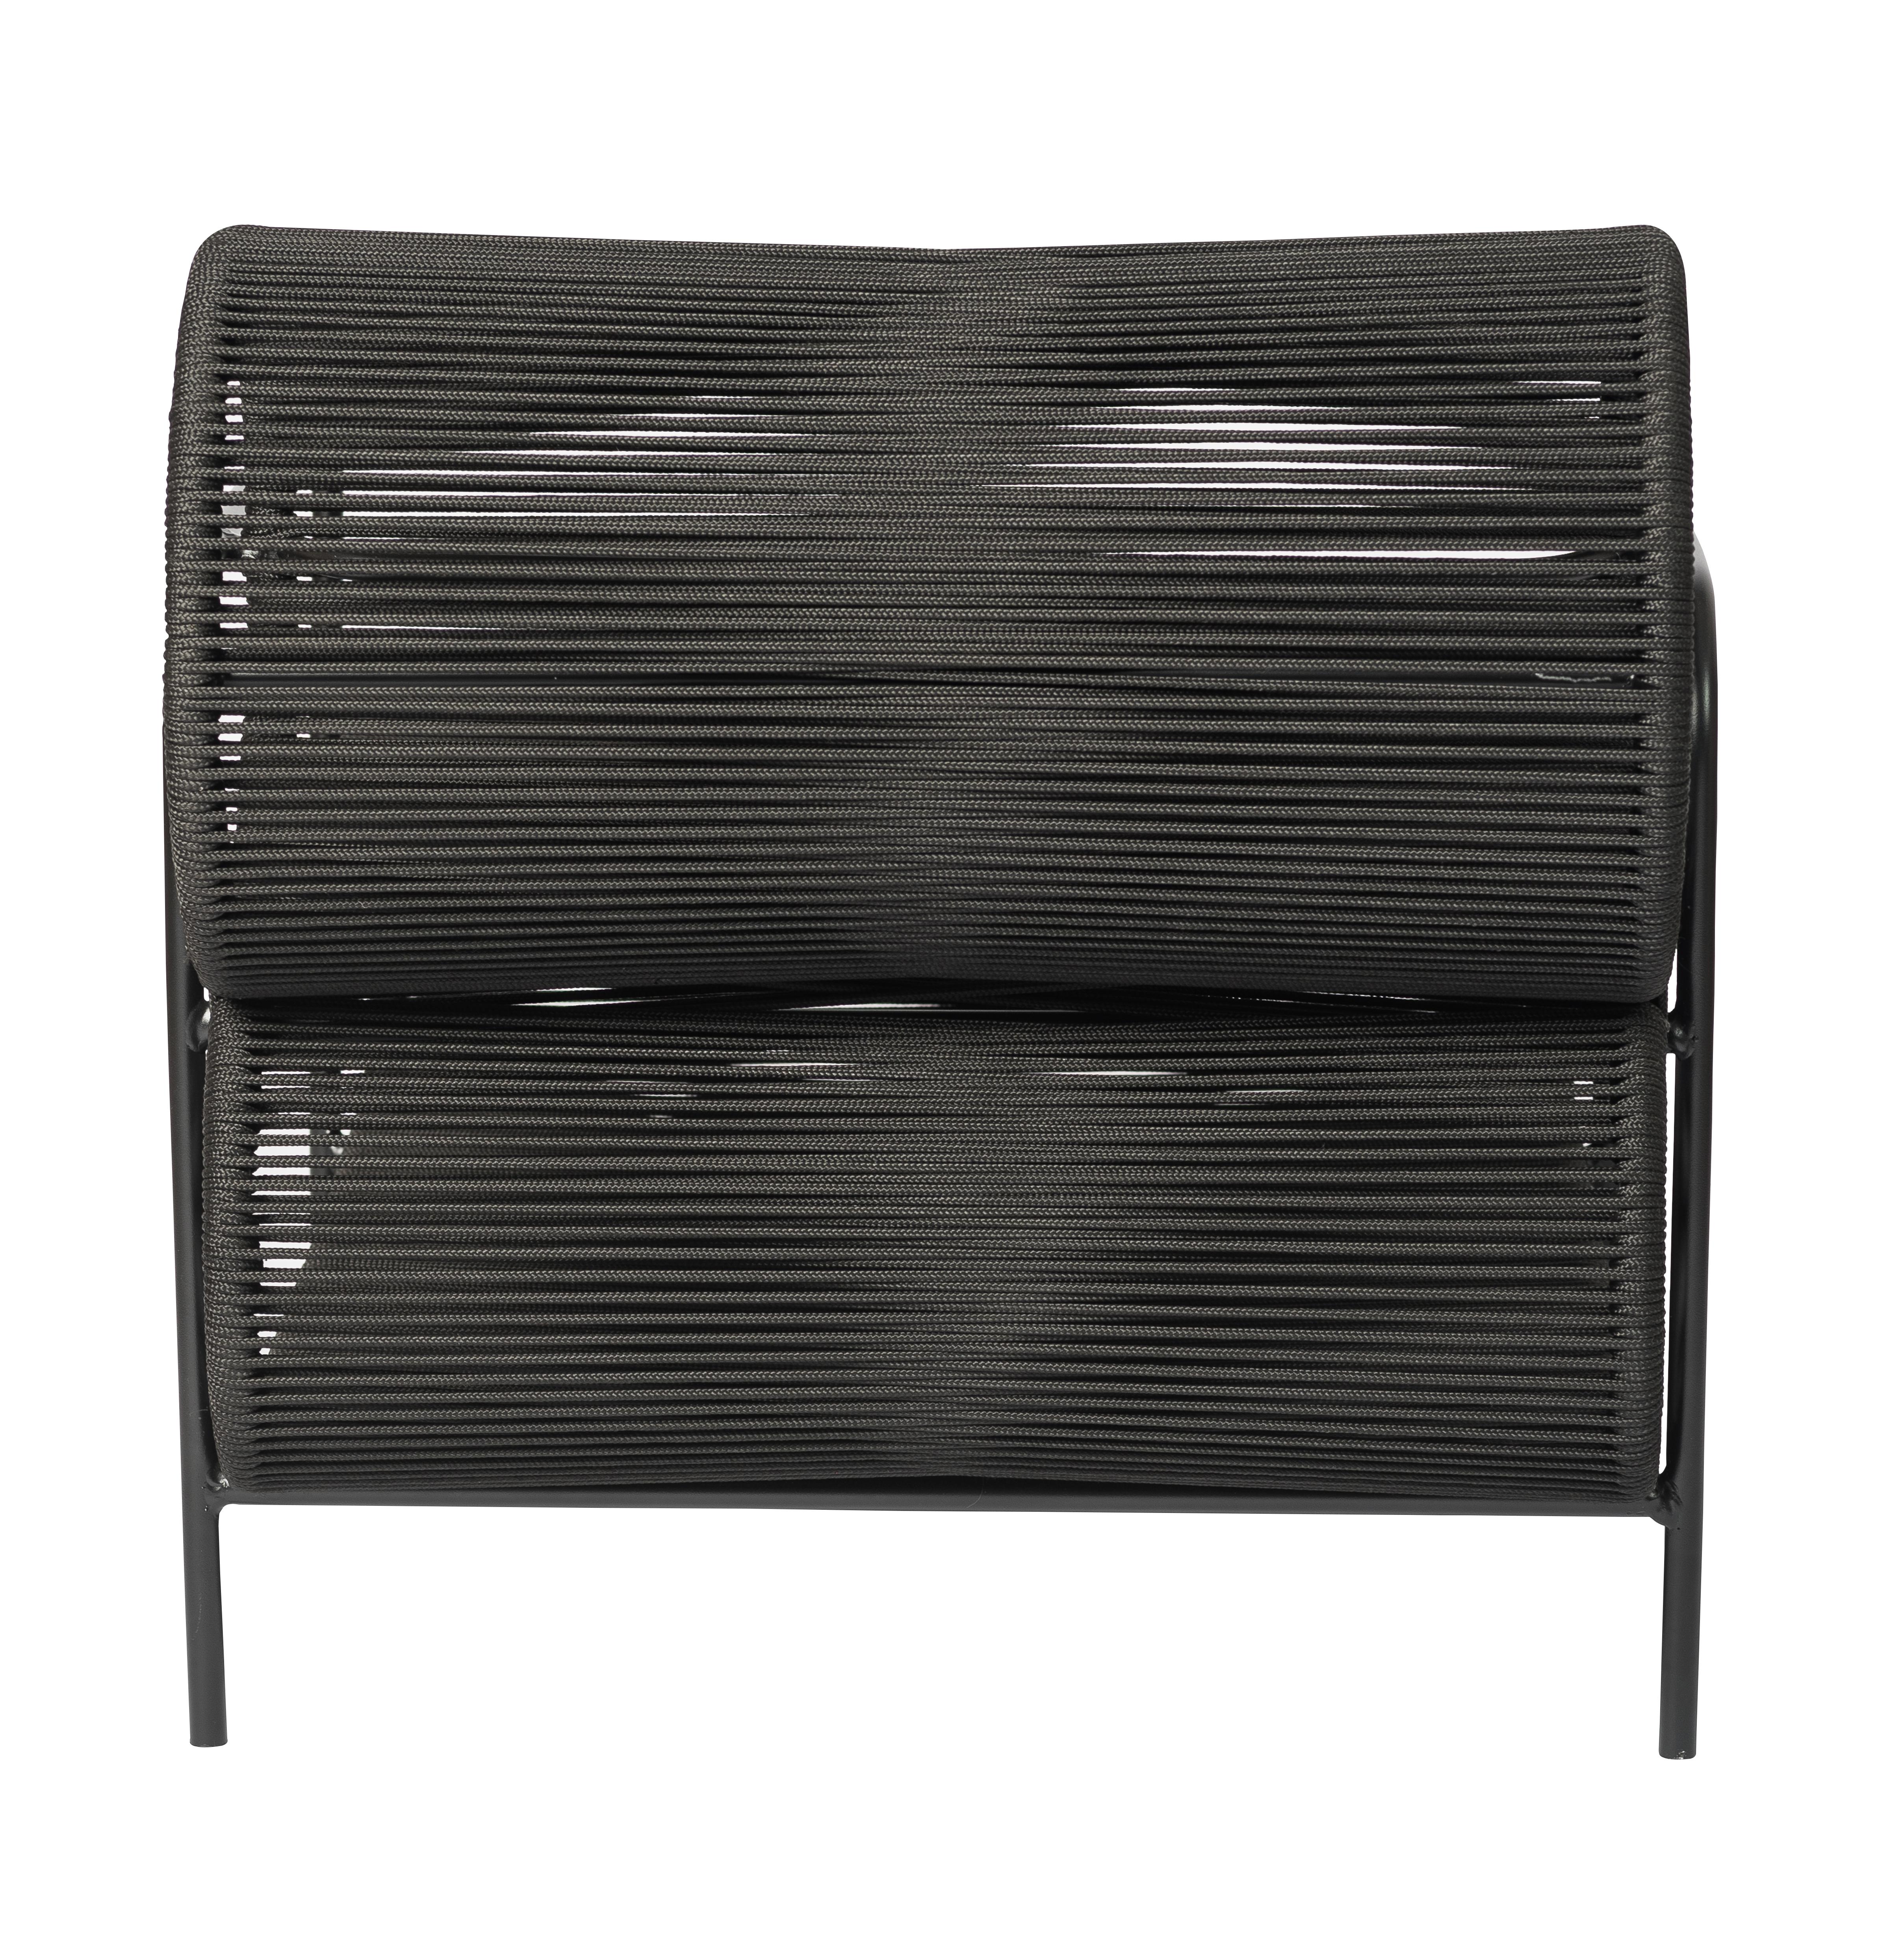 Armchair Lounge chair w/ Footstool Set outdoor / indoor 